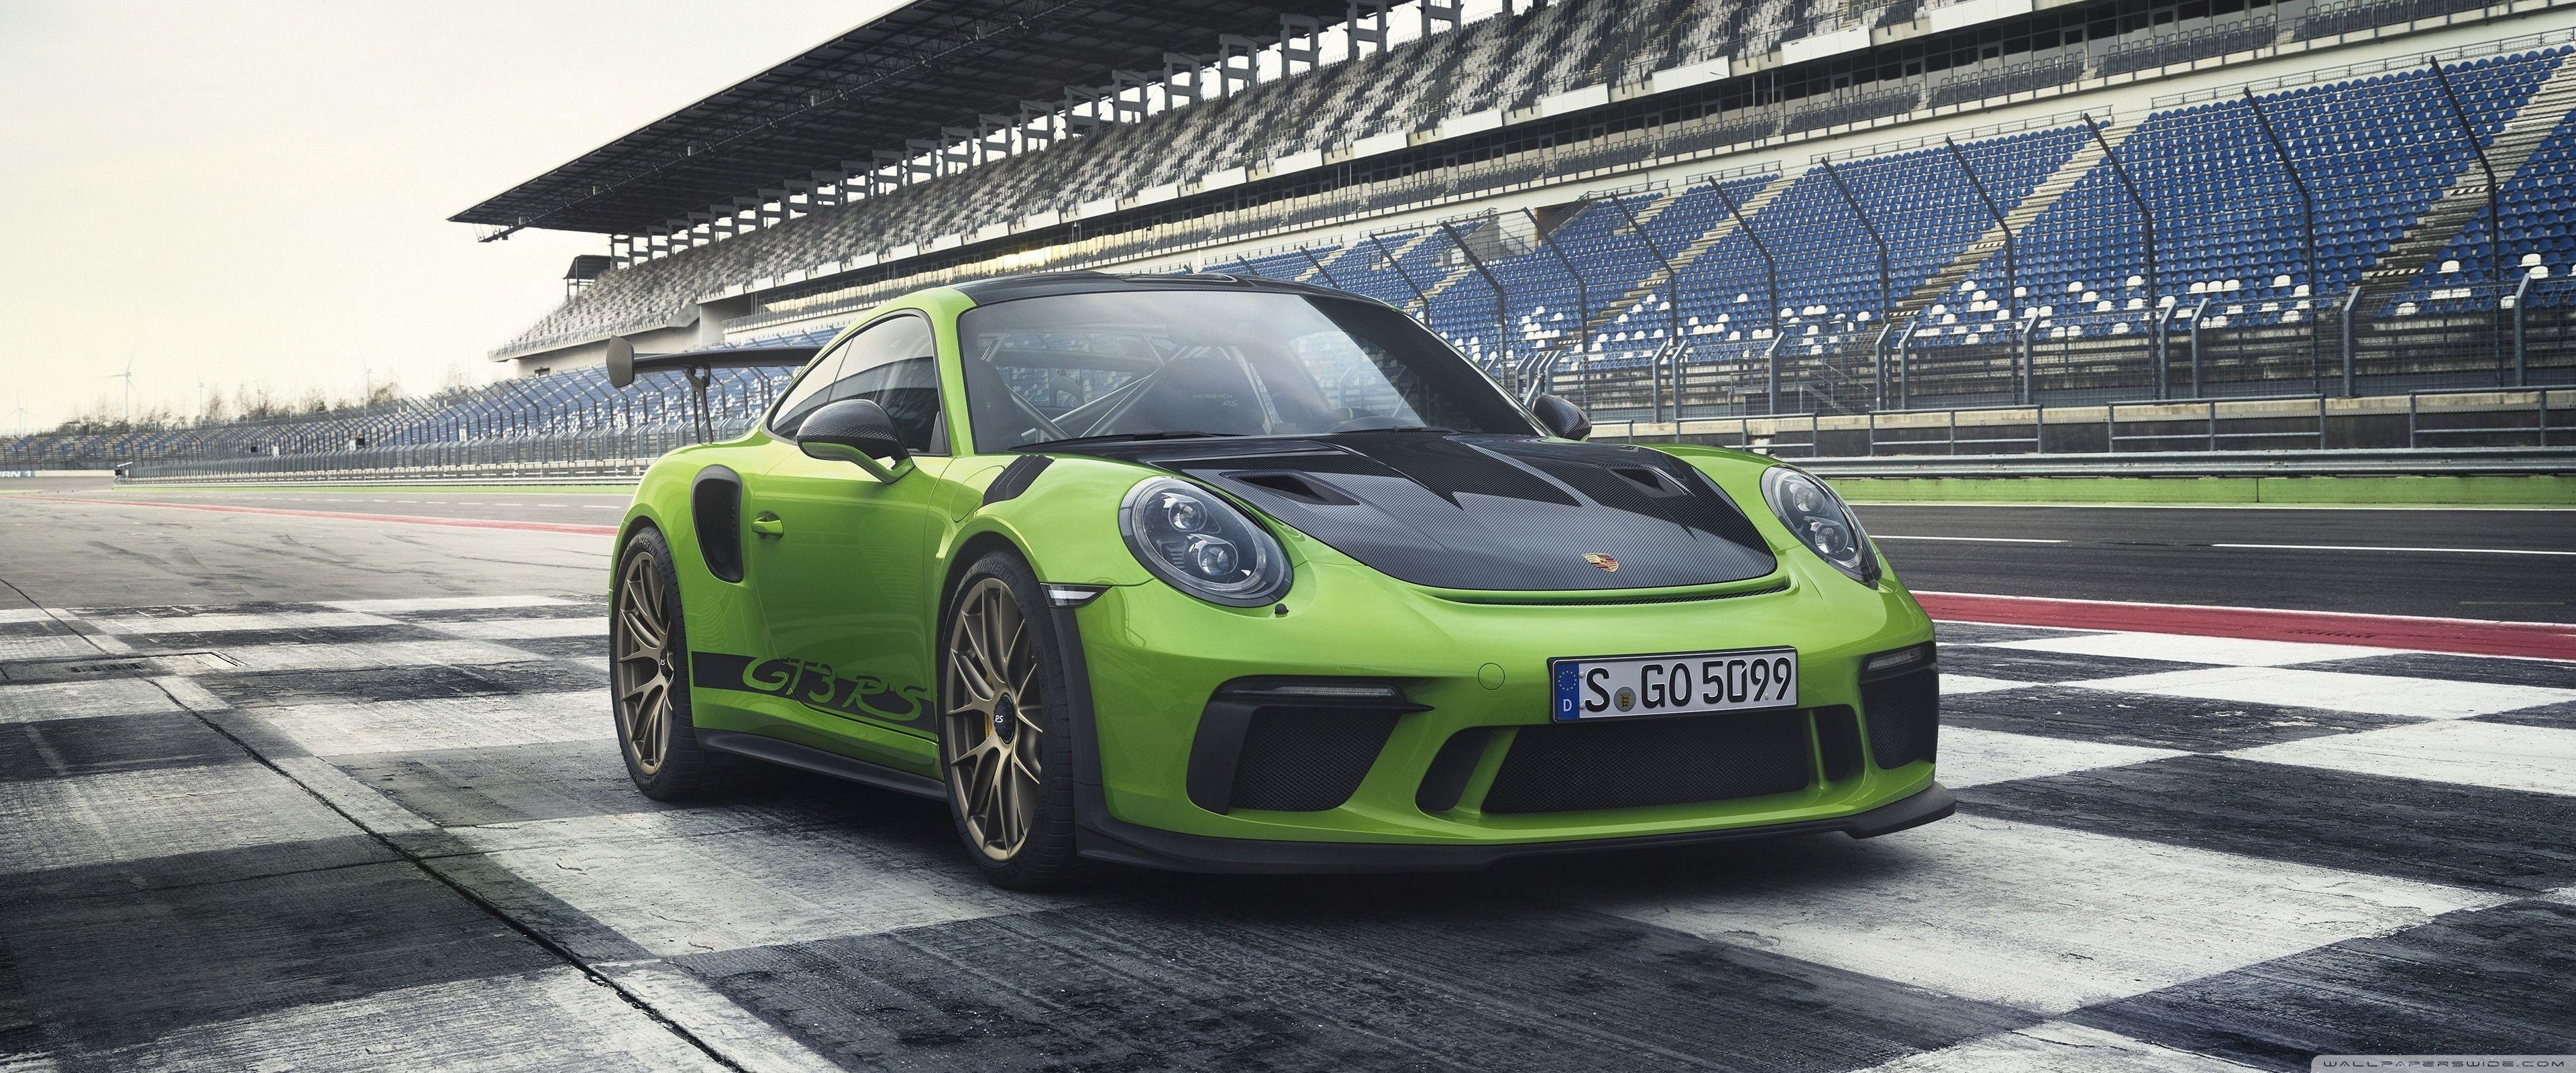 Porsche Ultra Wide Wallpapers Top Free Porsche Ultra Wide Backgrounds Wallpaperaccess